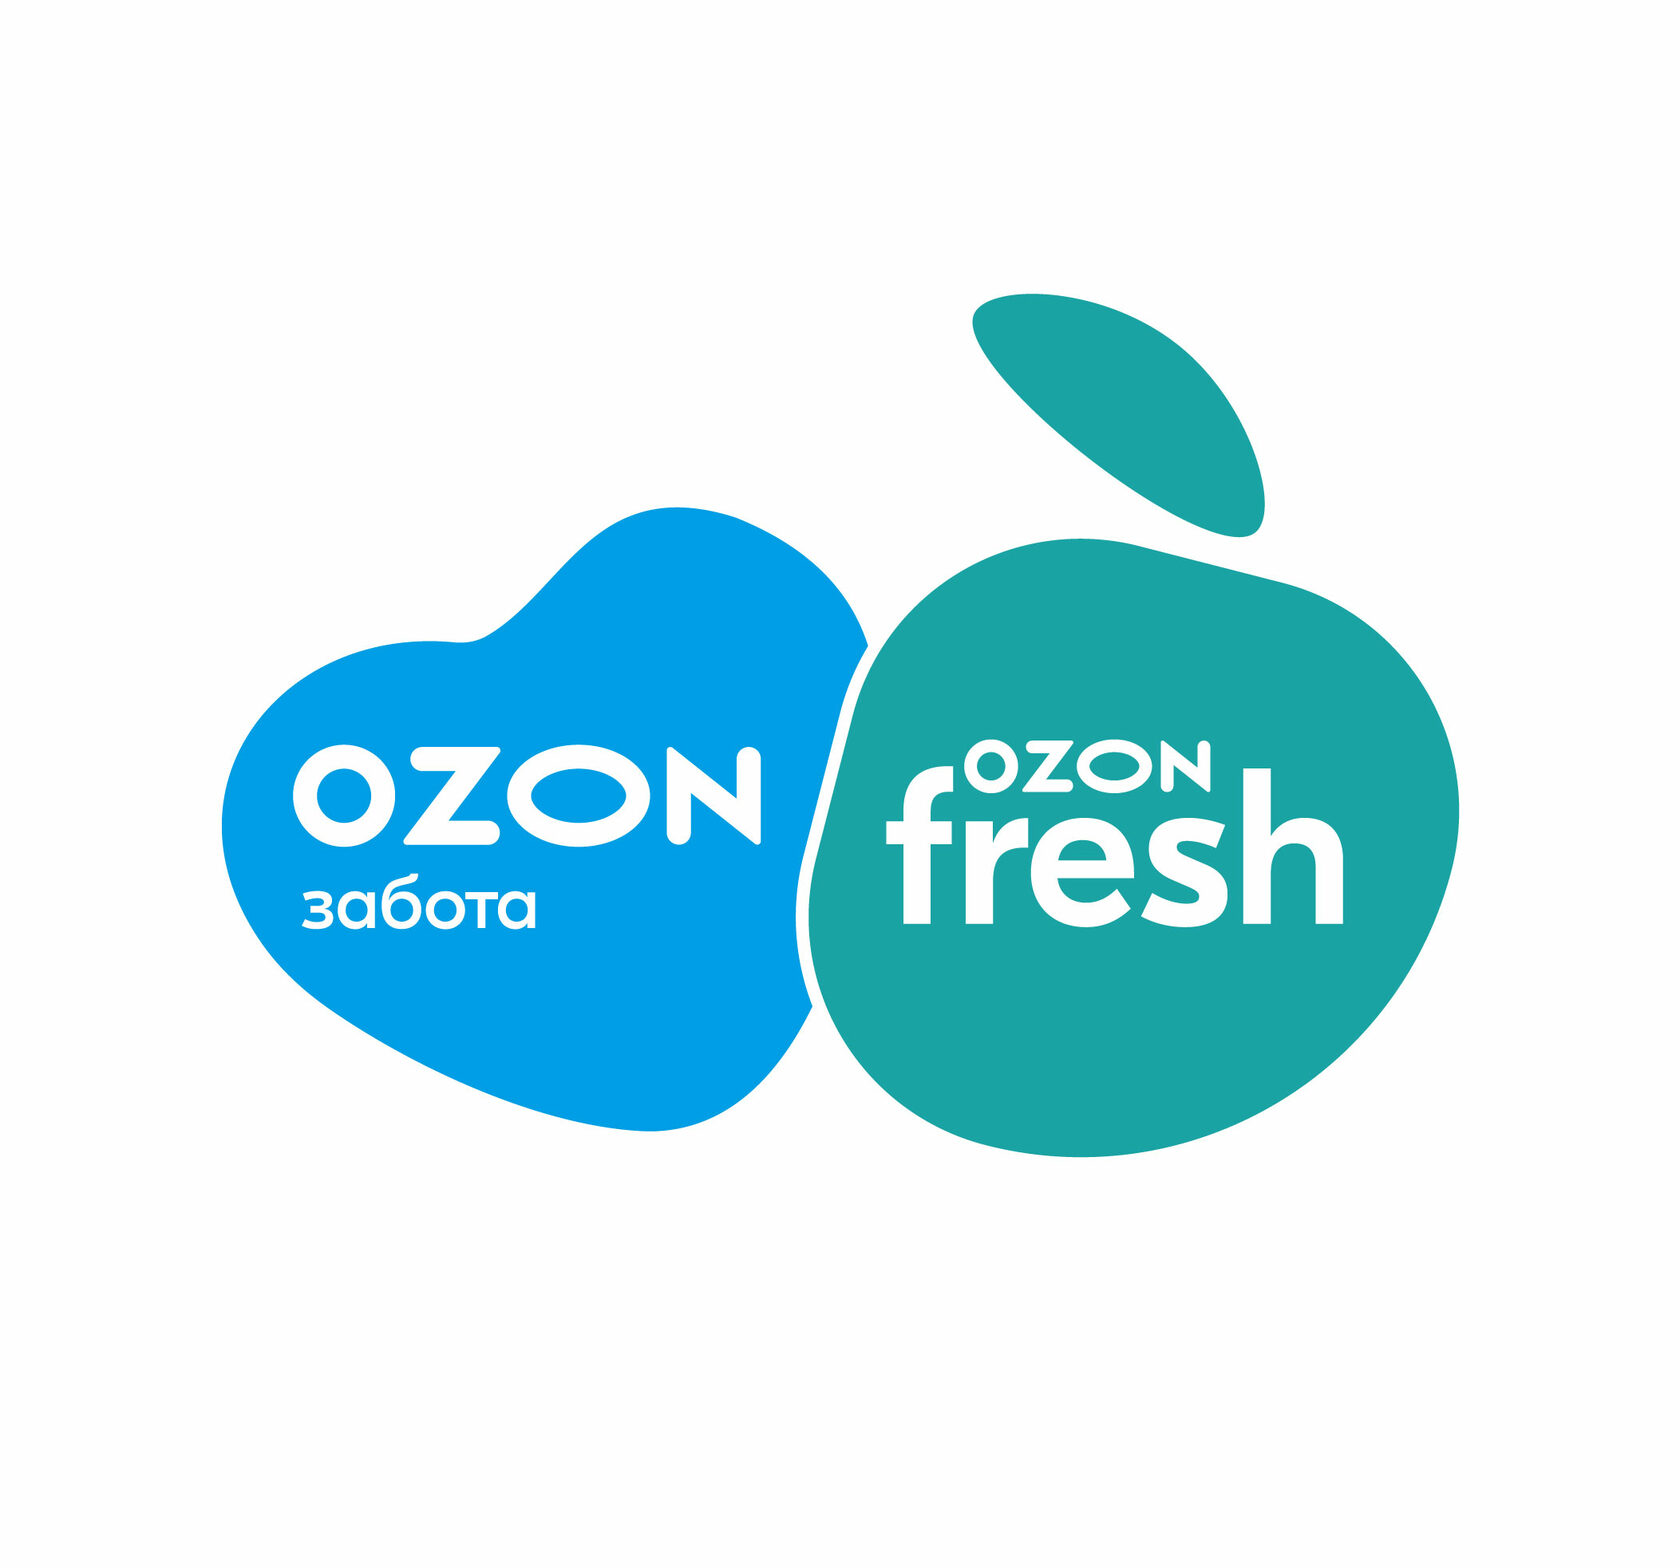 Ozone global. Озон Fresh. Озон логотип. Озон Фреш логотип. Логотип Охона.